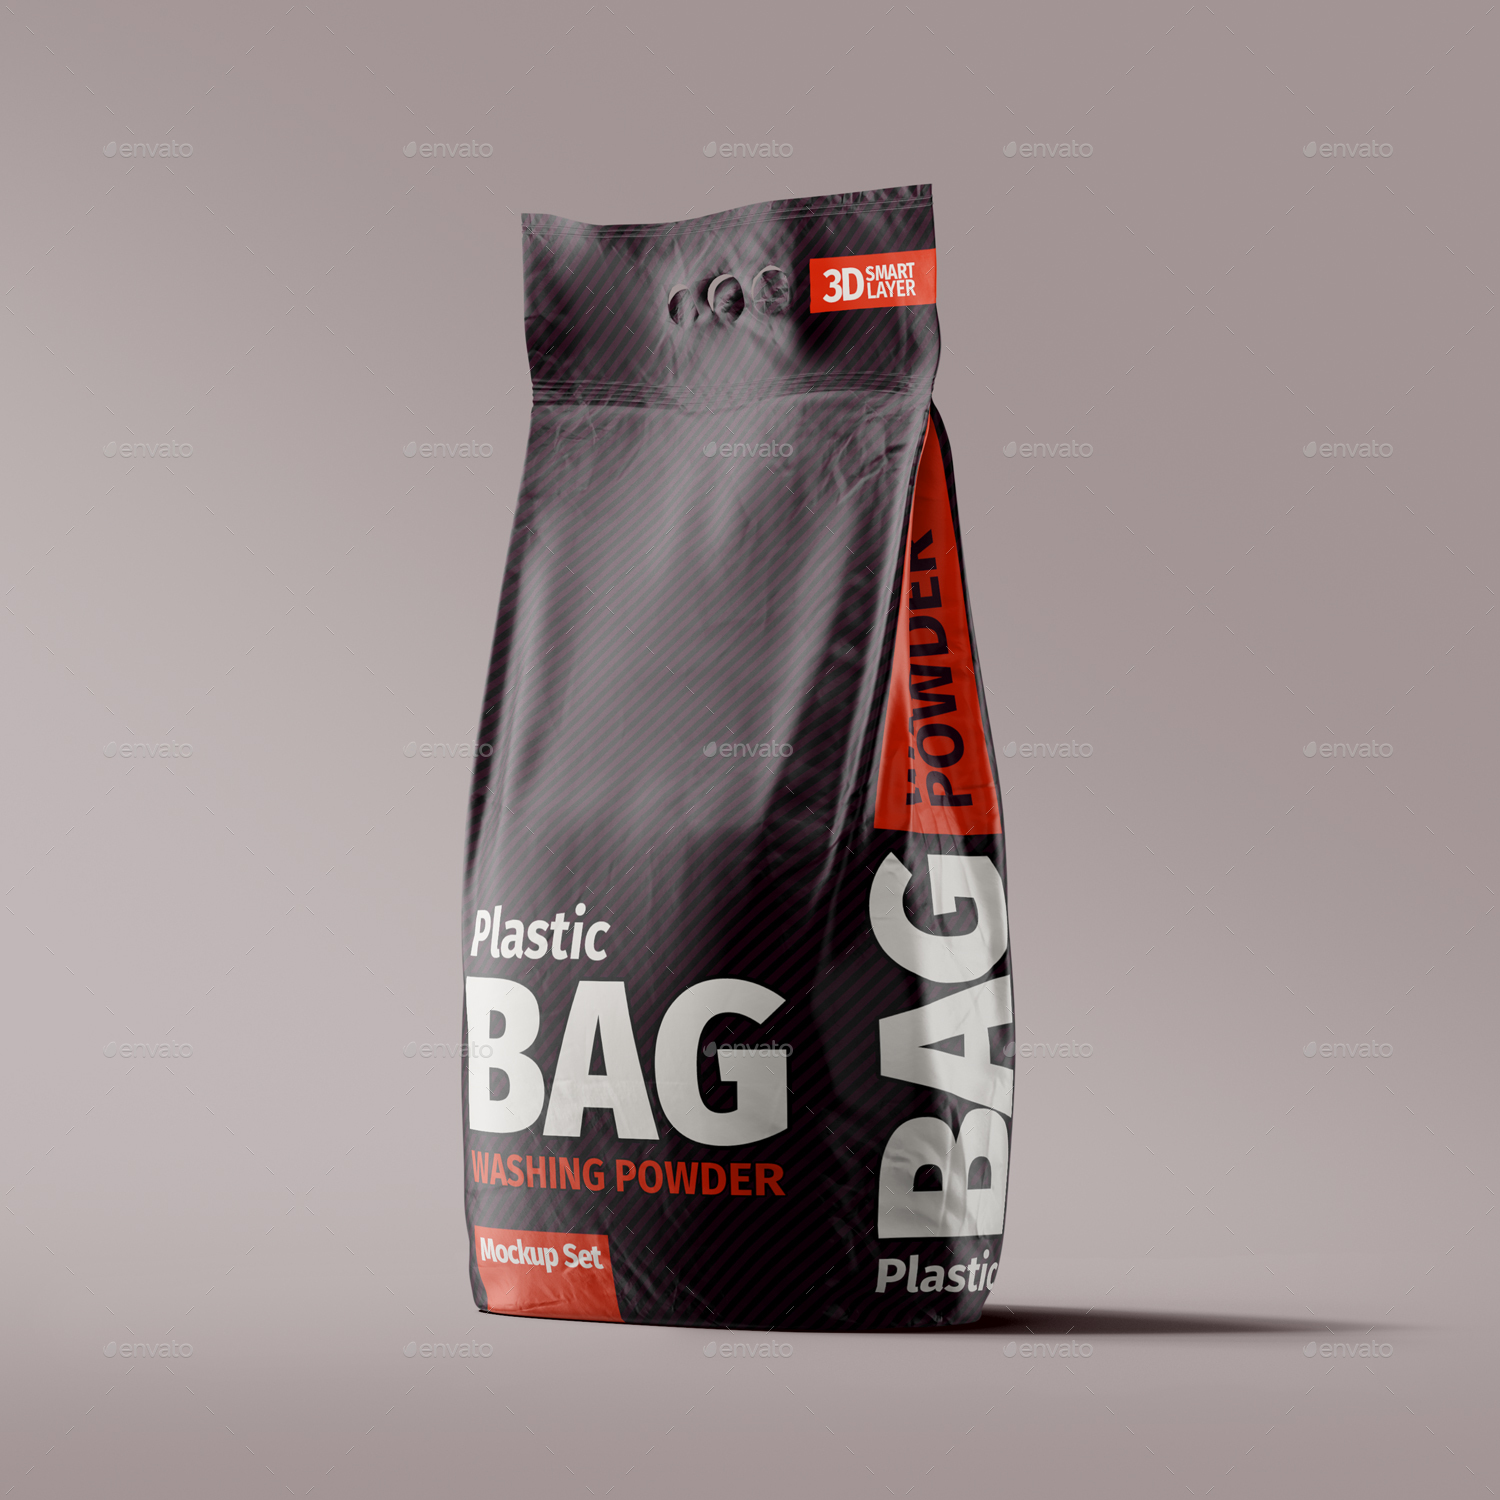 Download Plastic Bag Washing Powder Mockup Set by Radetzki ...